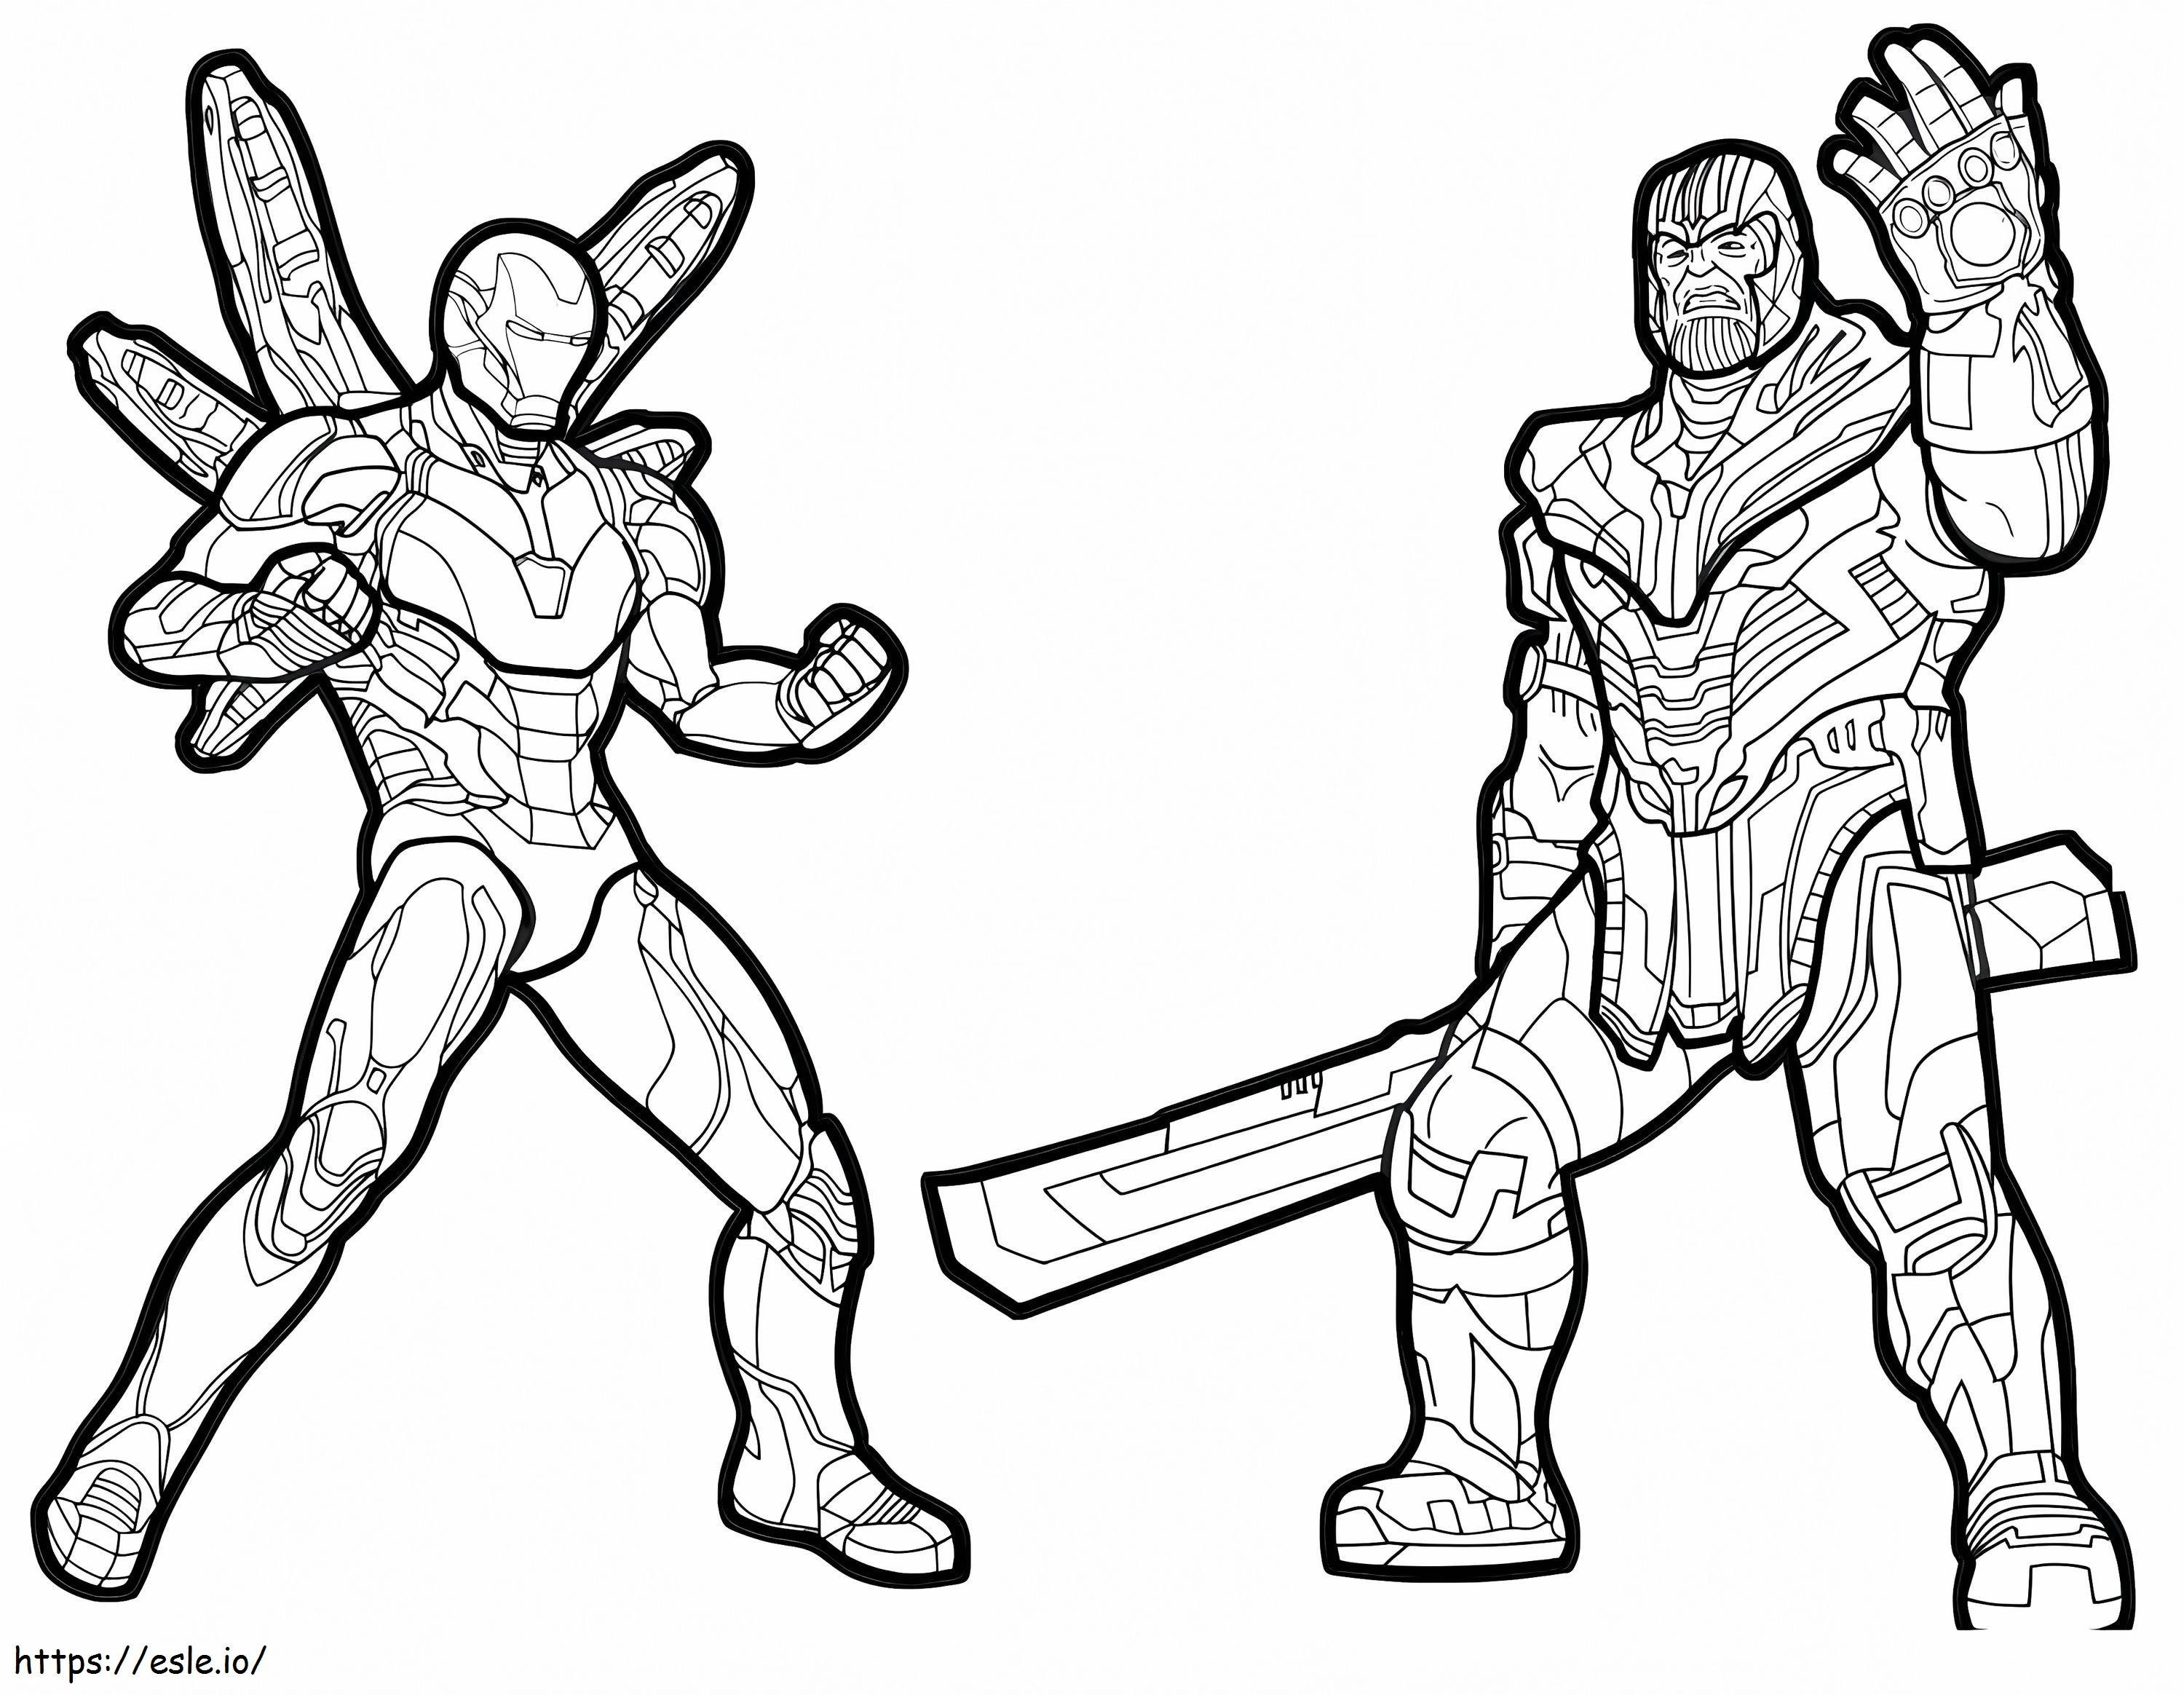 Thanos e Homem de Ferro para colorir